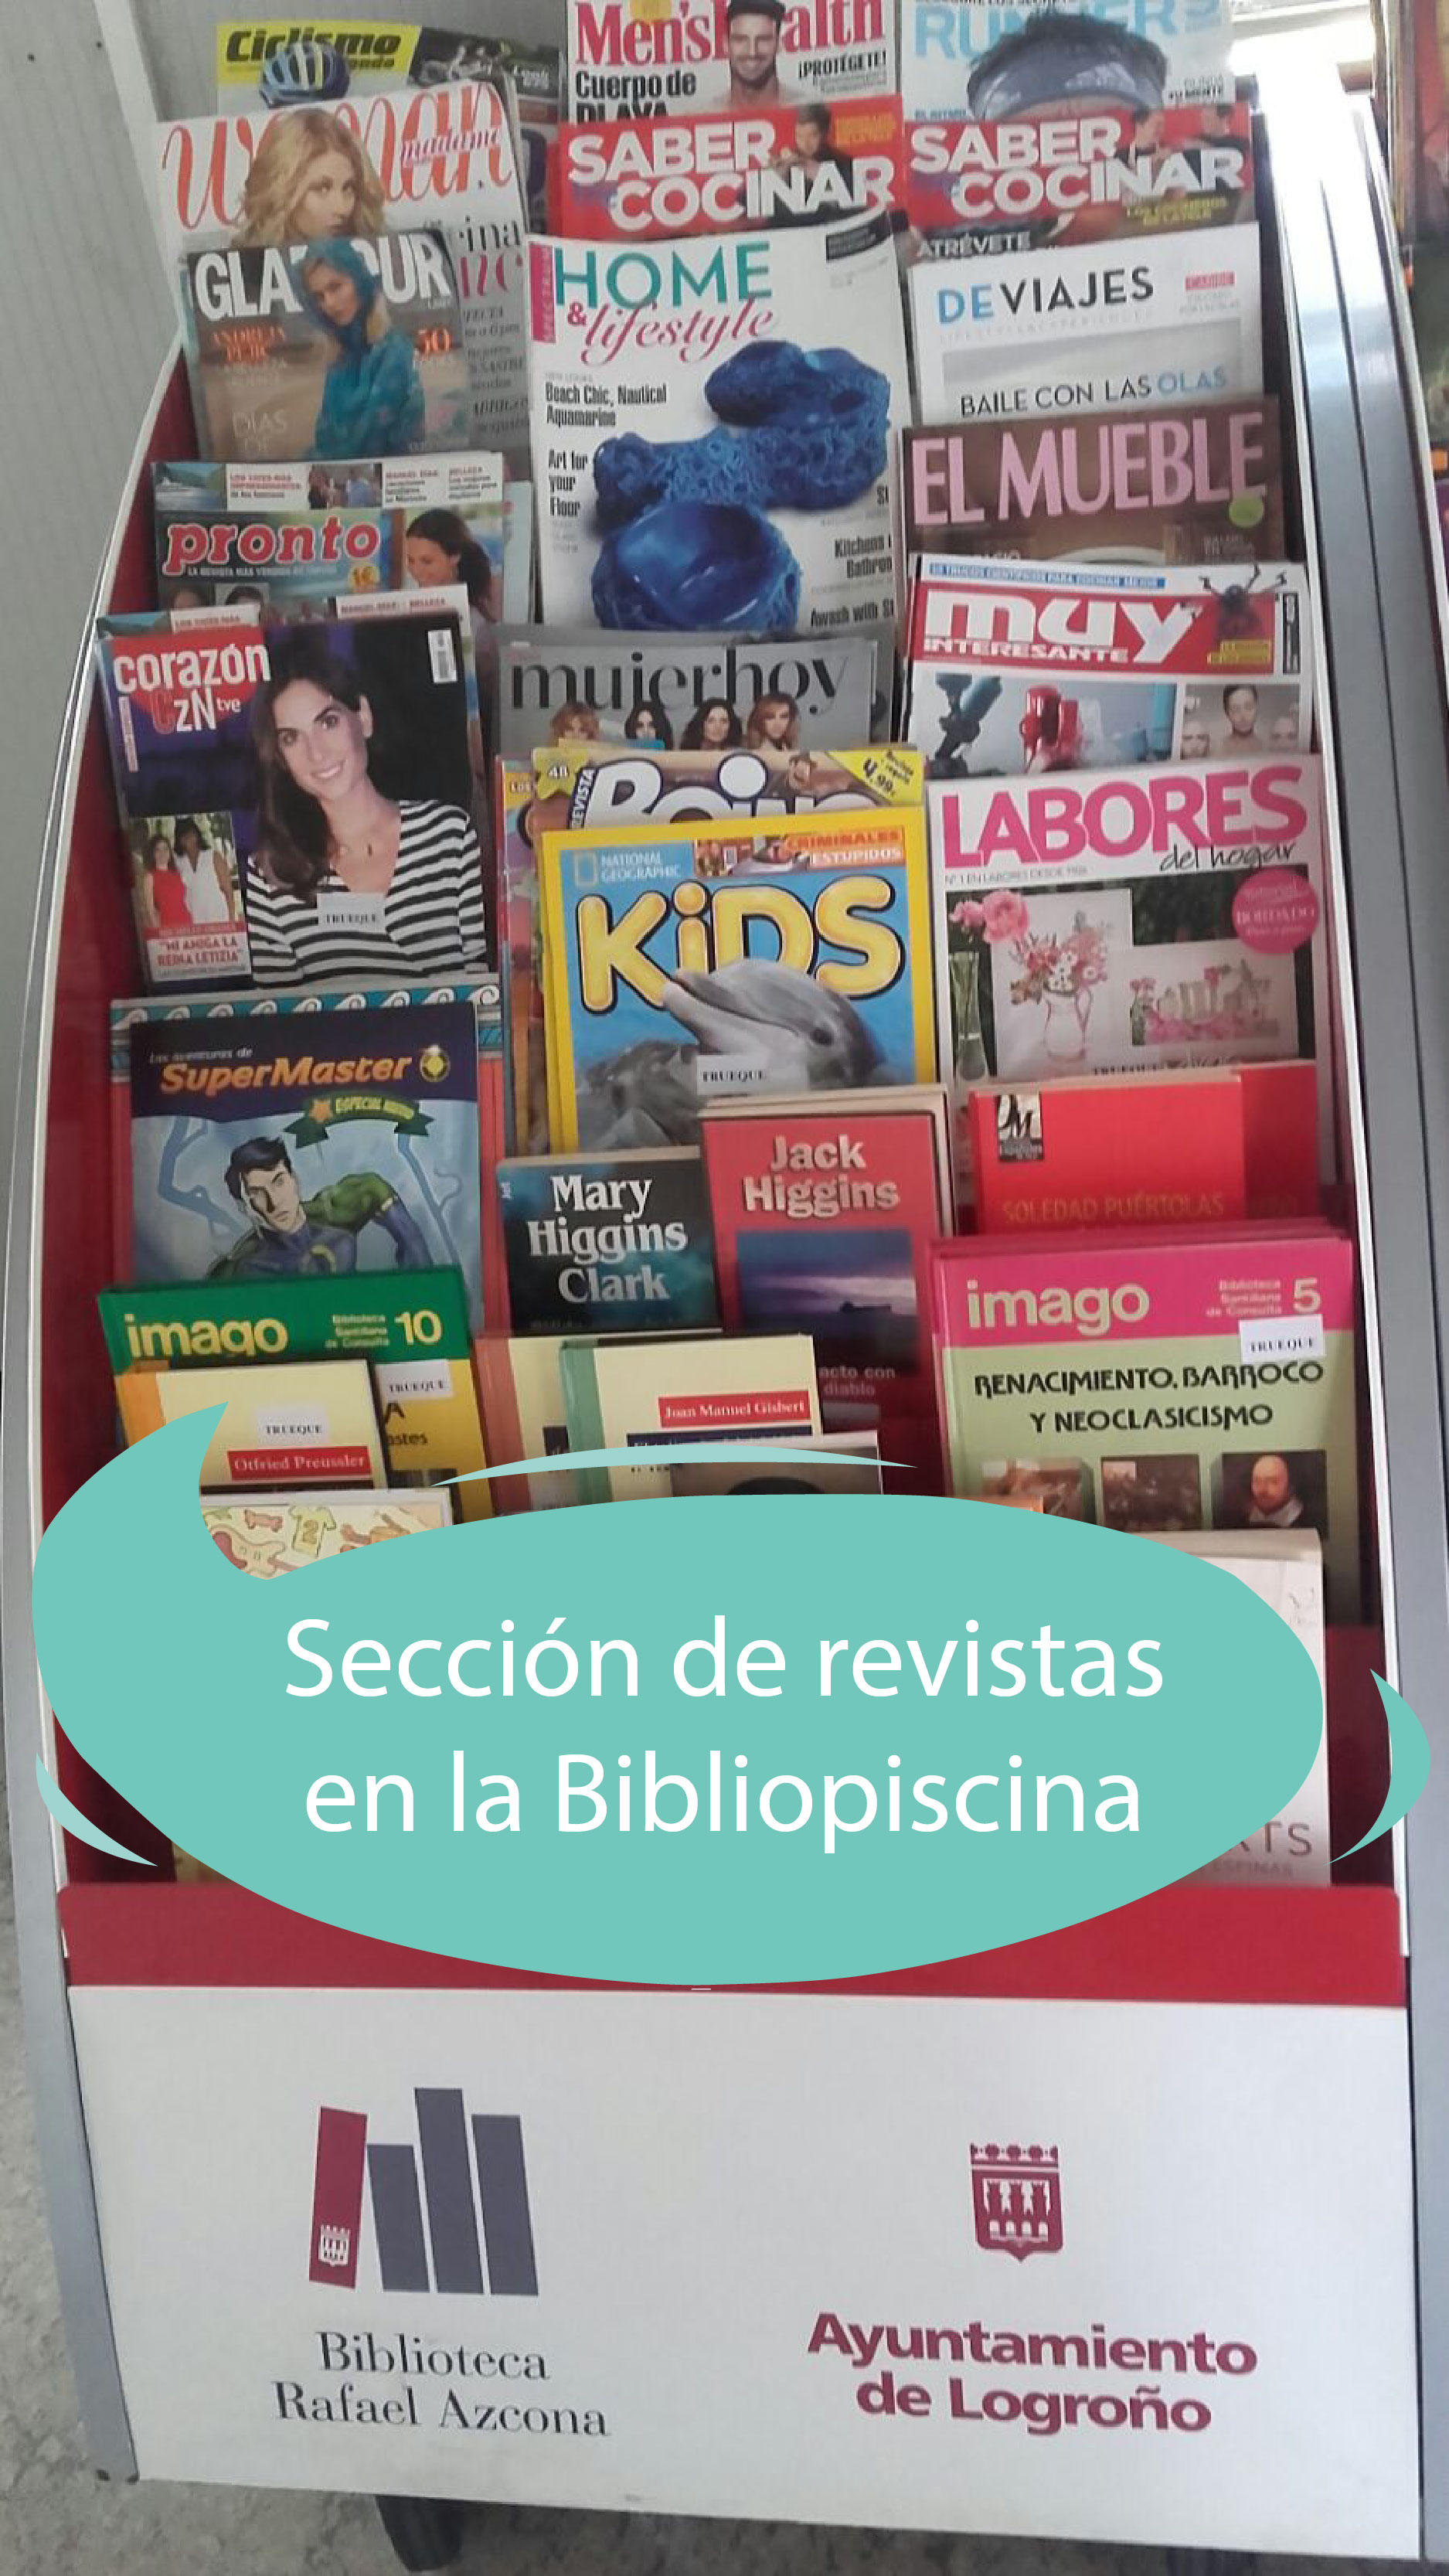 Sección de revistas en la bibliopiscina